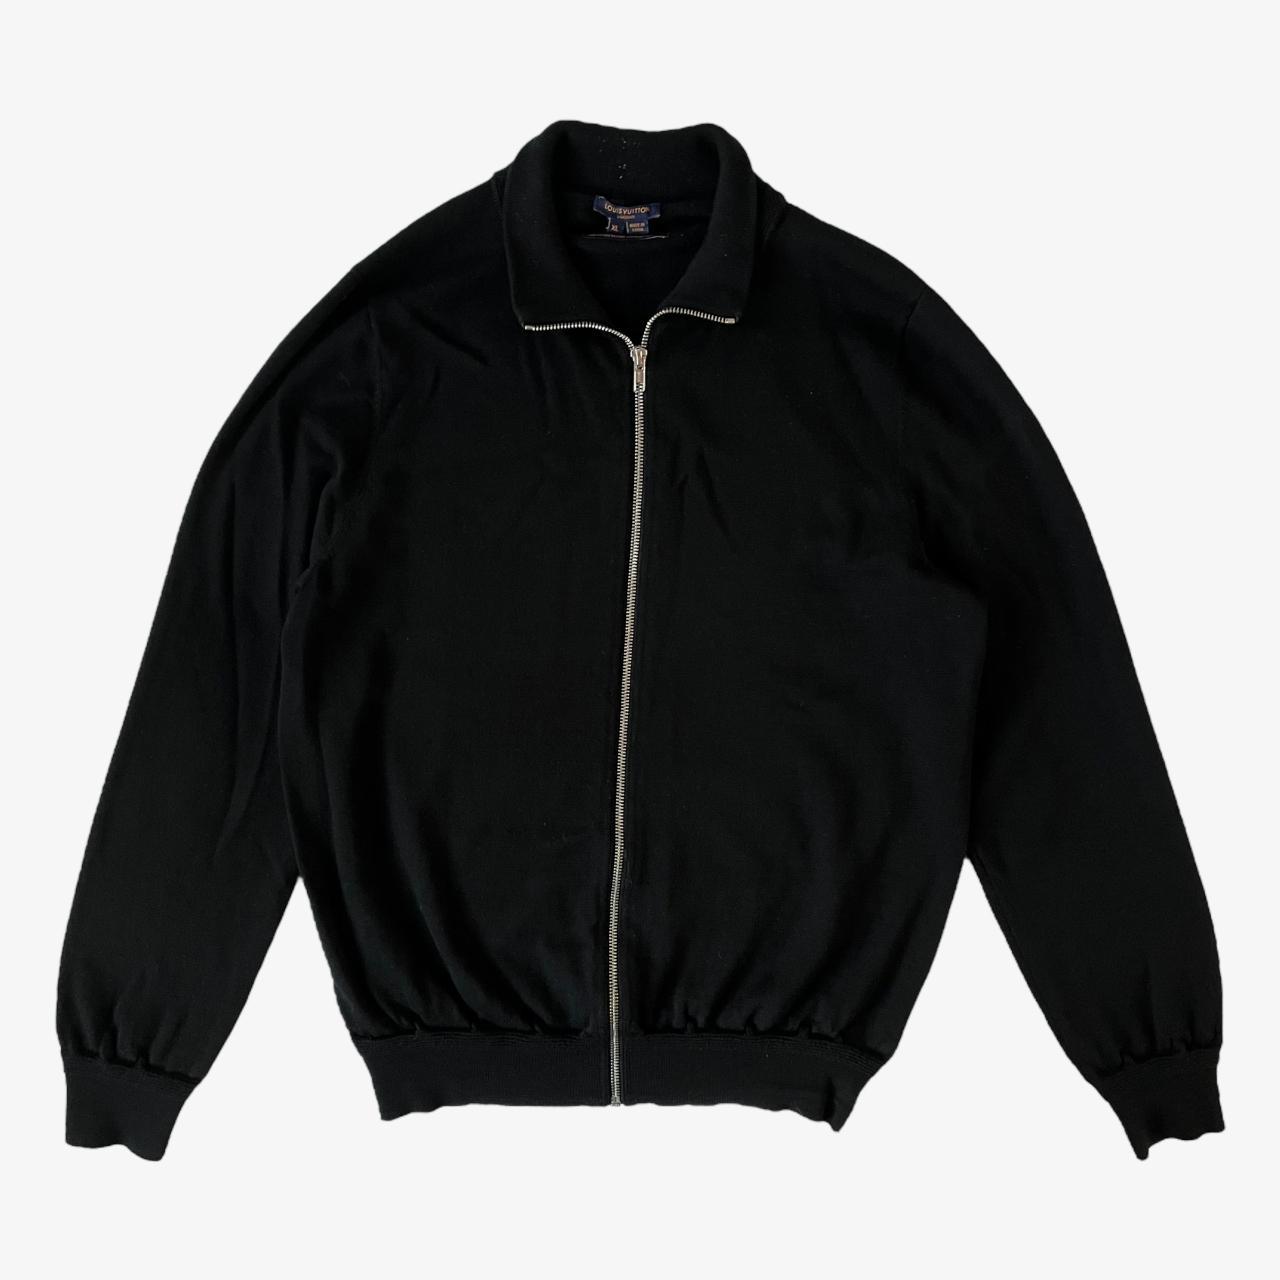 Vintage Y2K Louis Vuitton Uniforms Black 100% Wool... - Depop